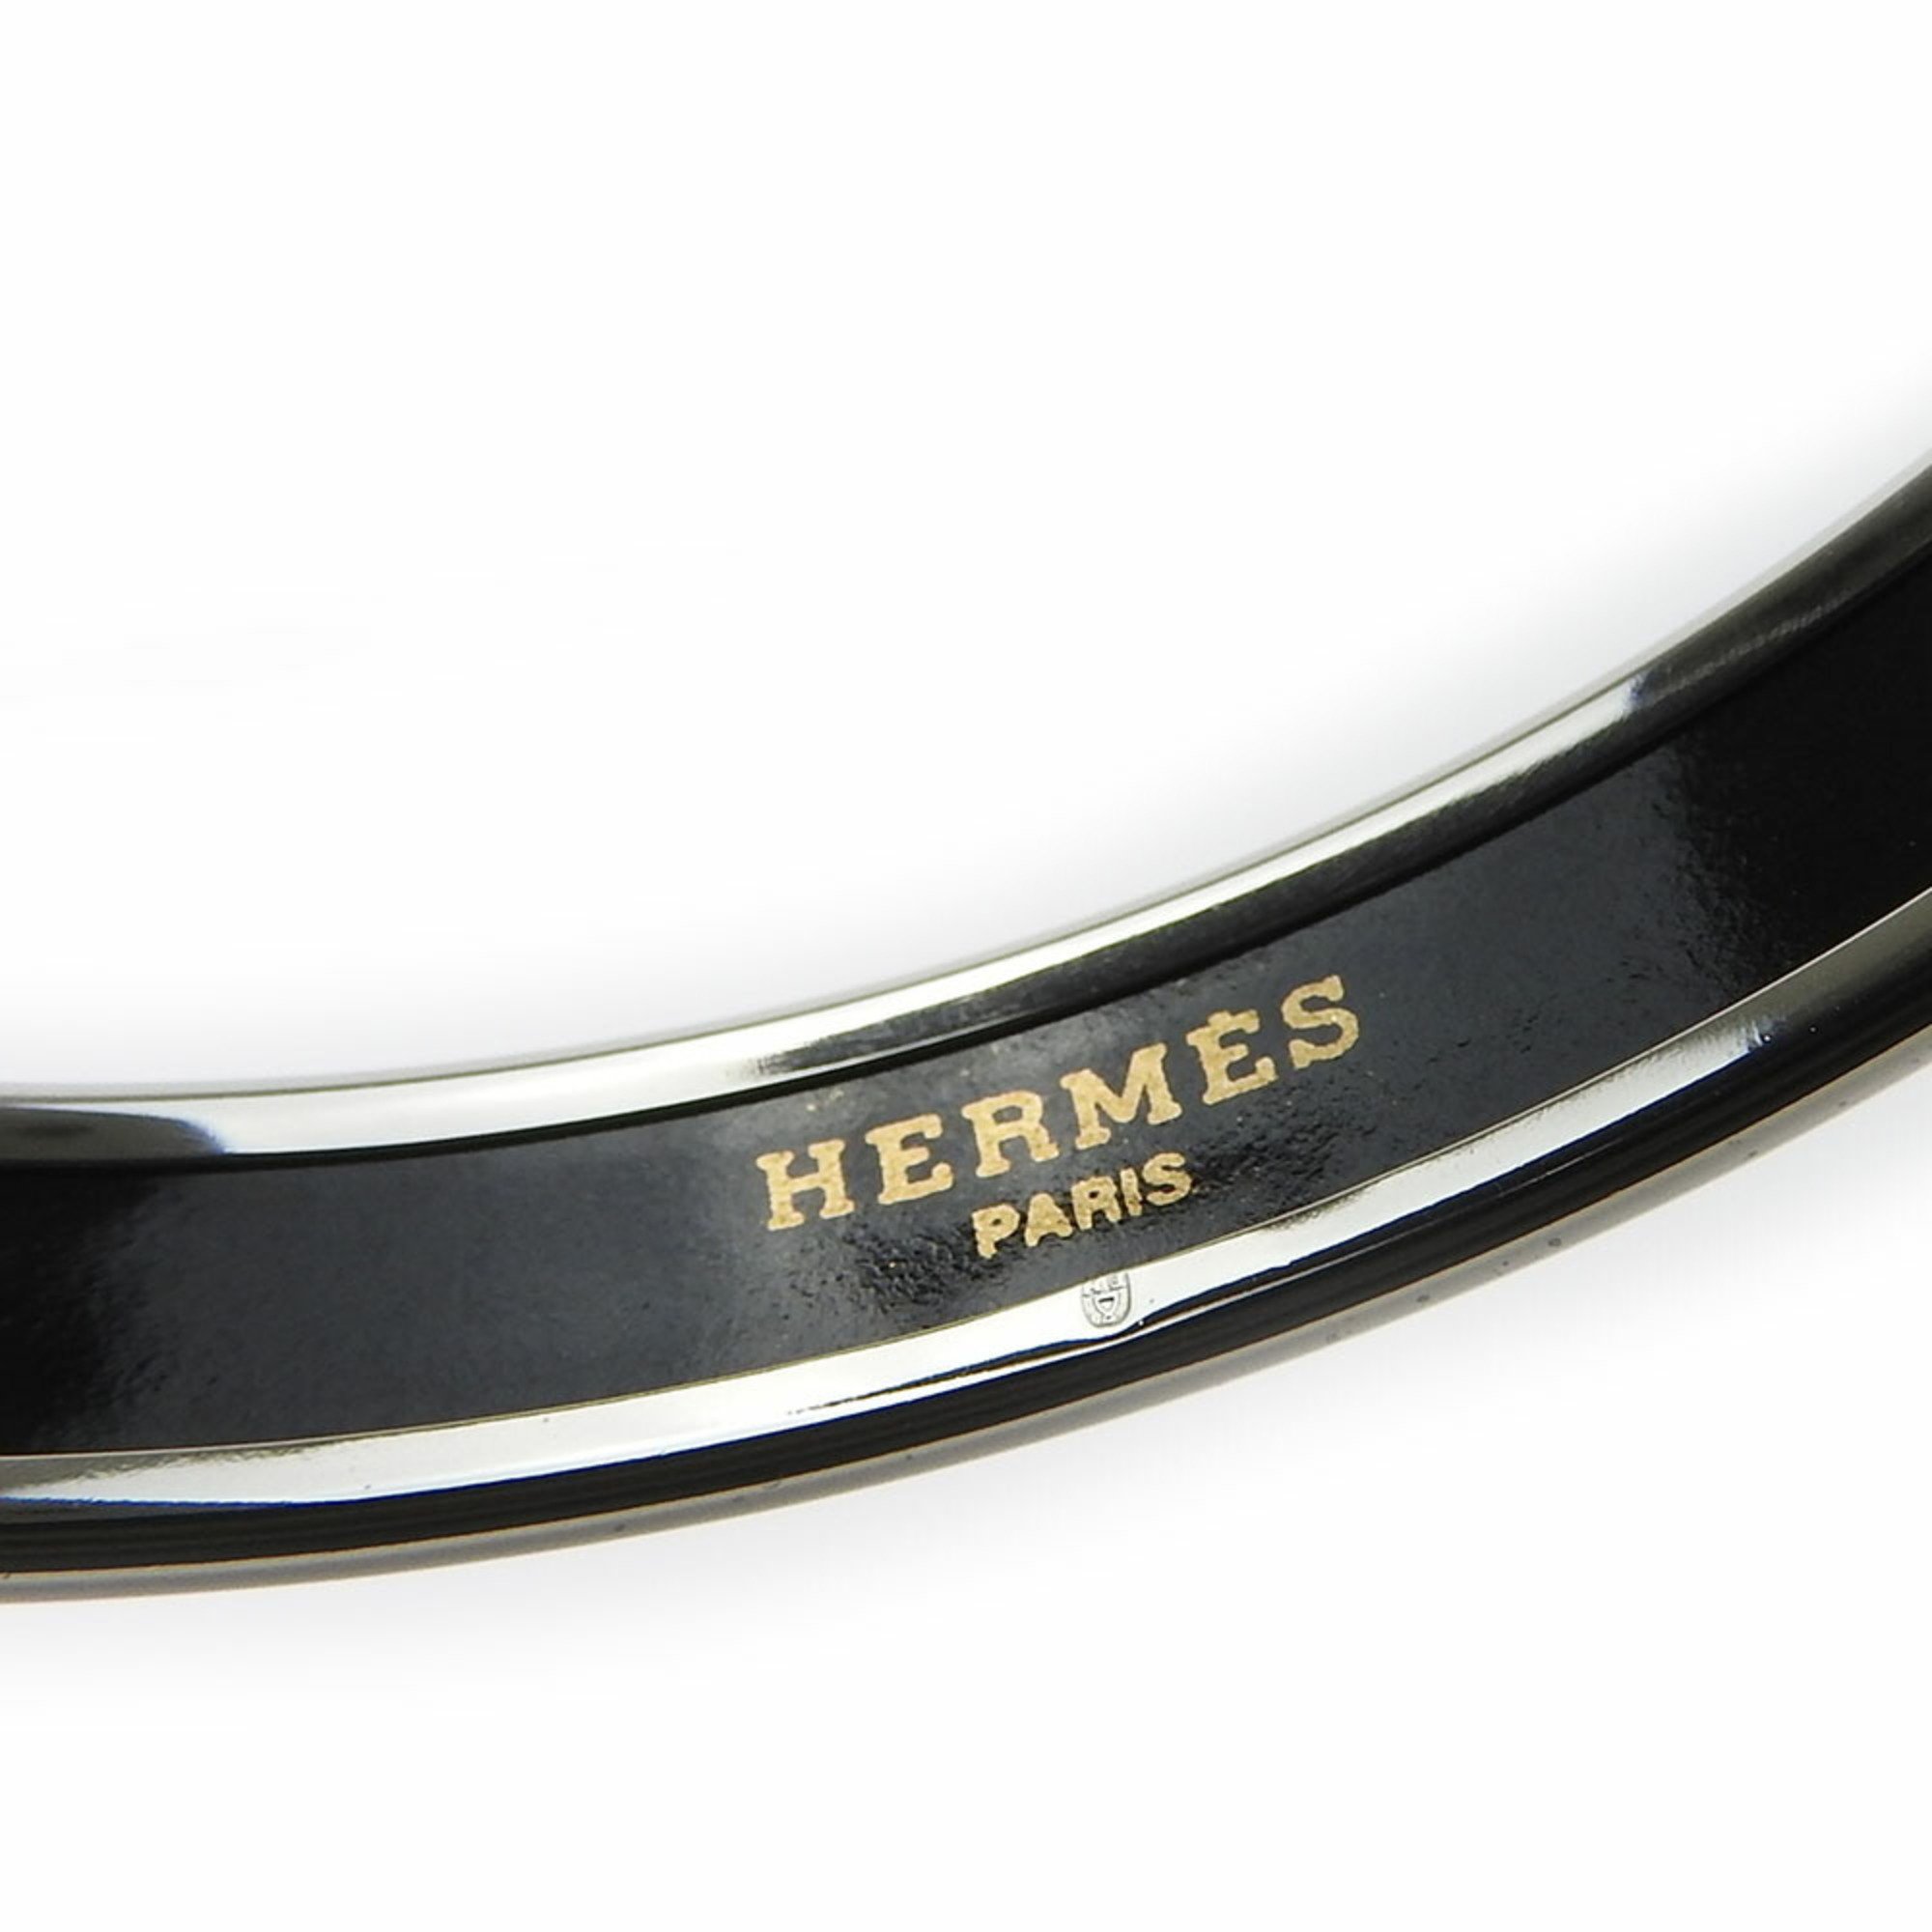 Hermes Bangle, Enamel PM, Enamel, Metal, Multicolor, Light Gray, K Engraved, Accessory, Women's, HERMES